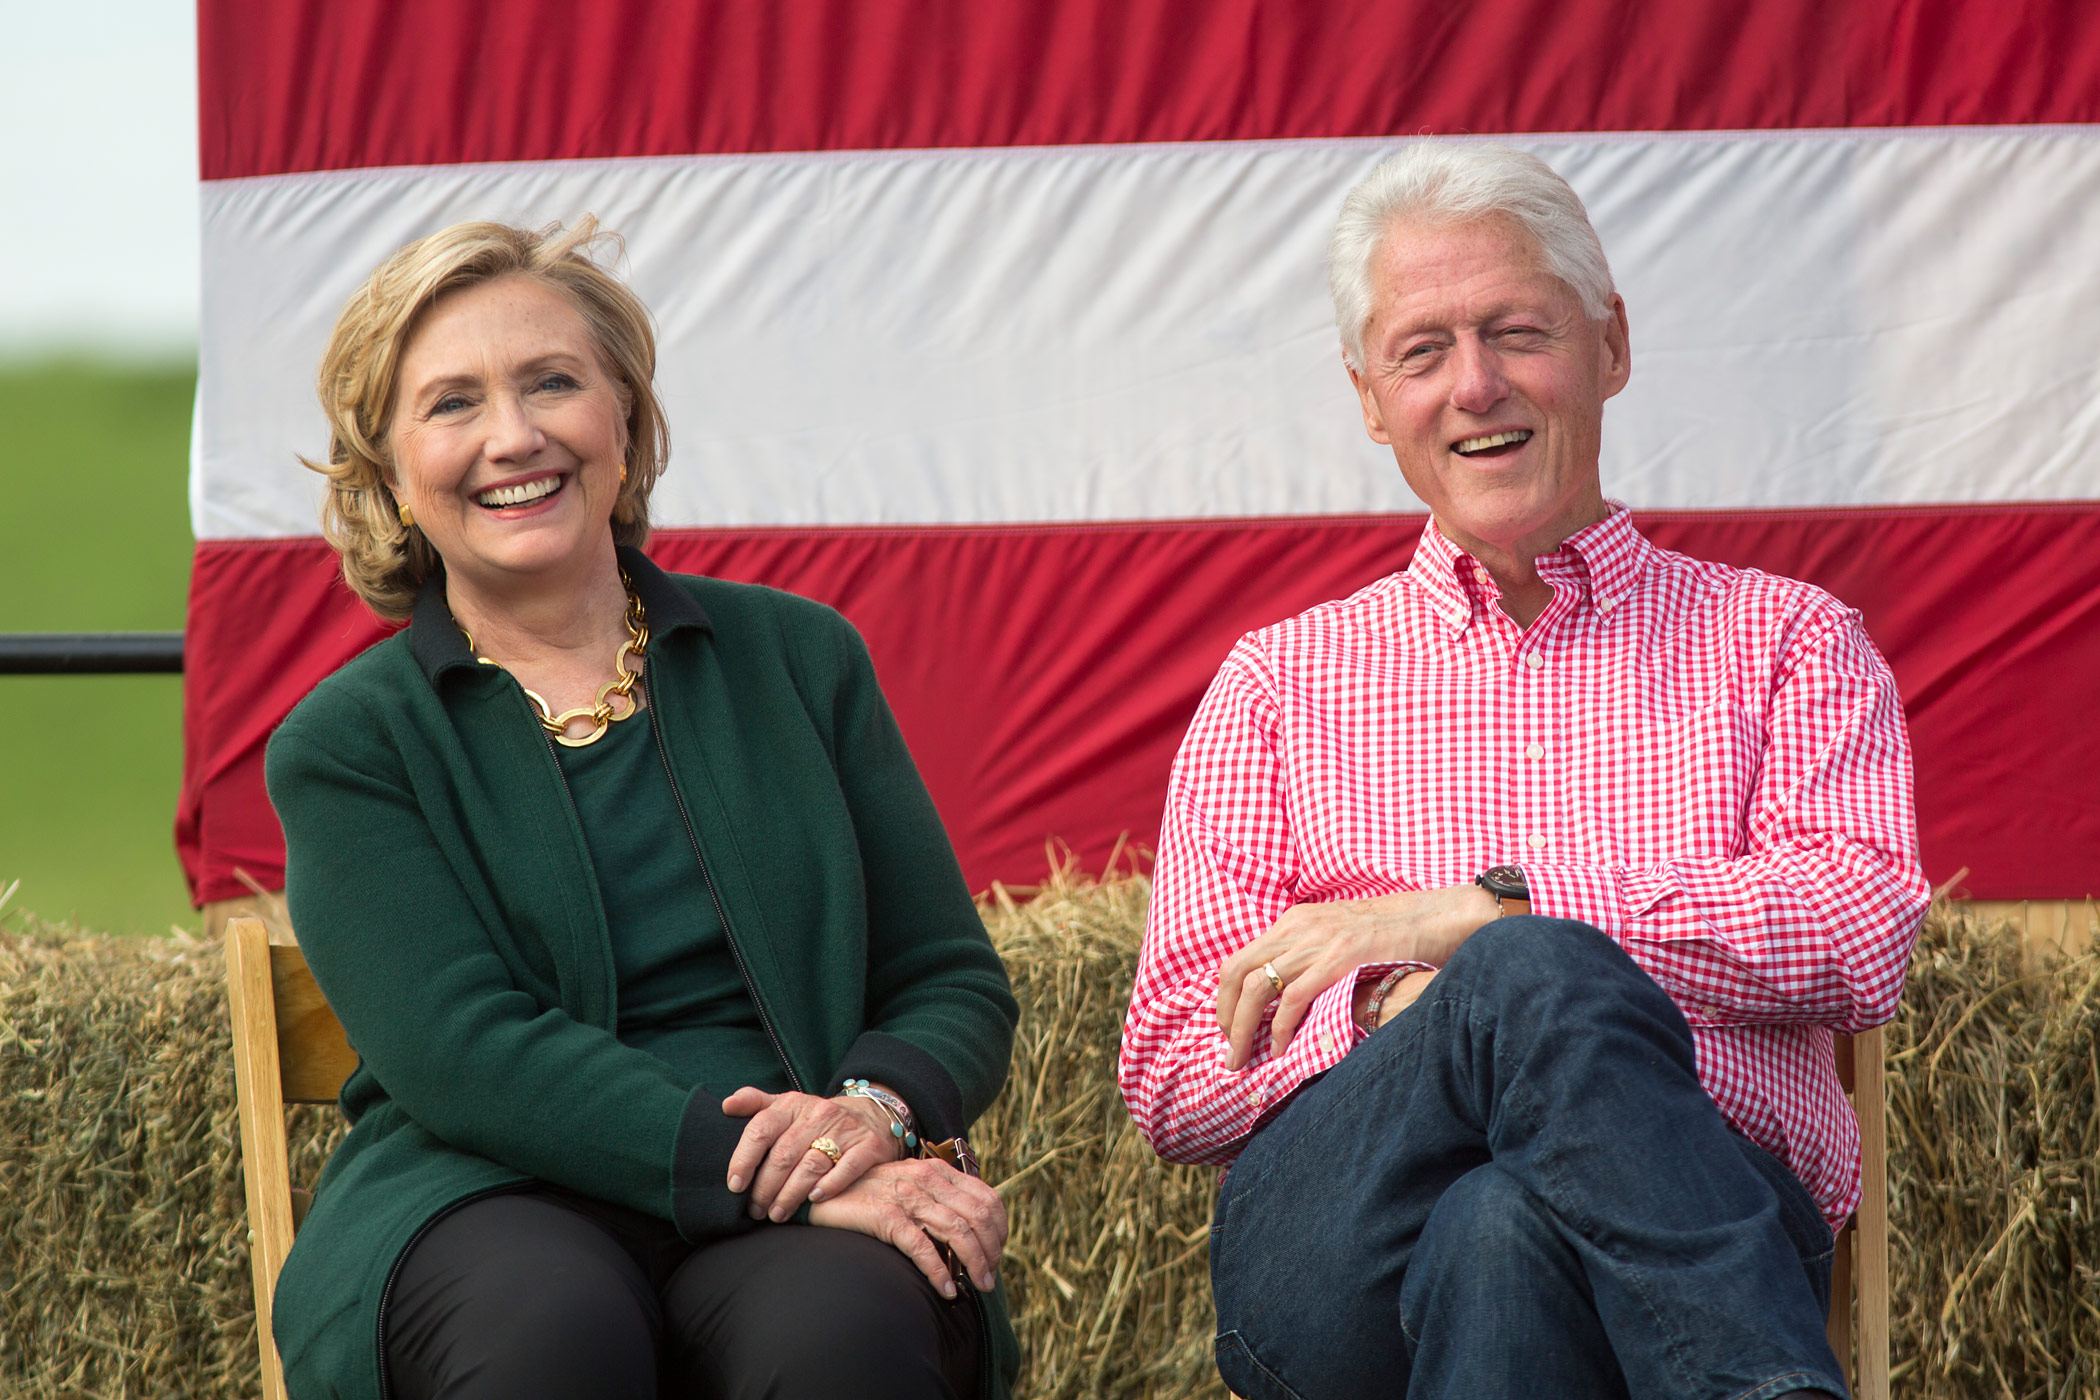 Hillary Clinton attends a Steak Fry in Iowa